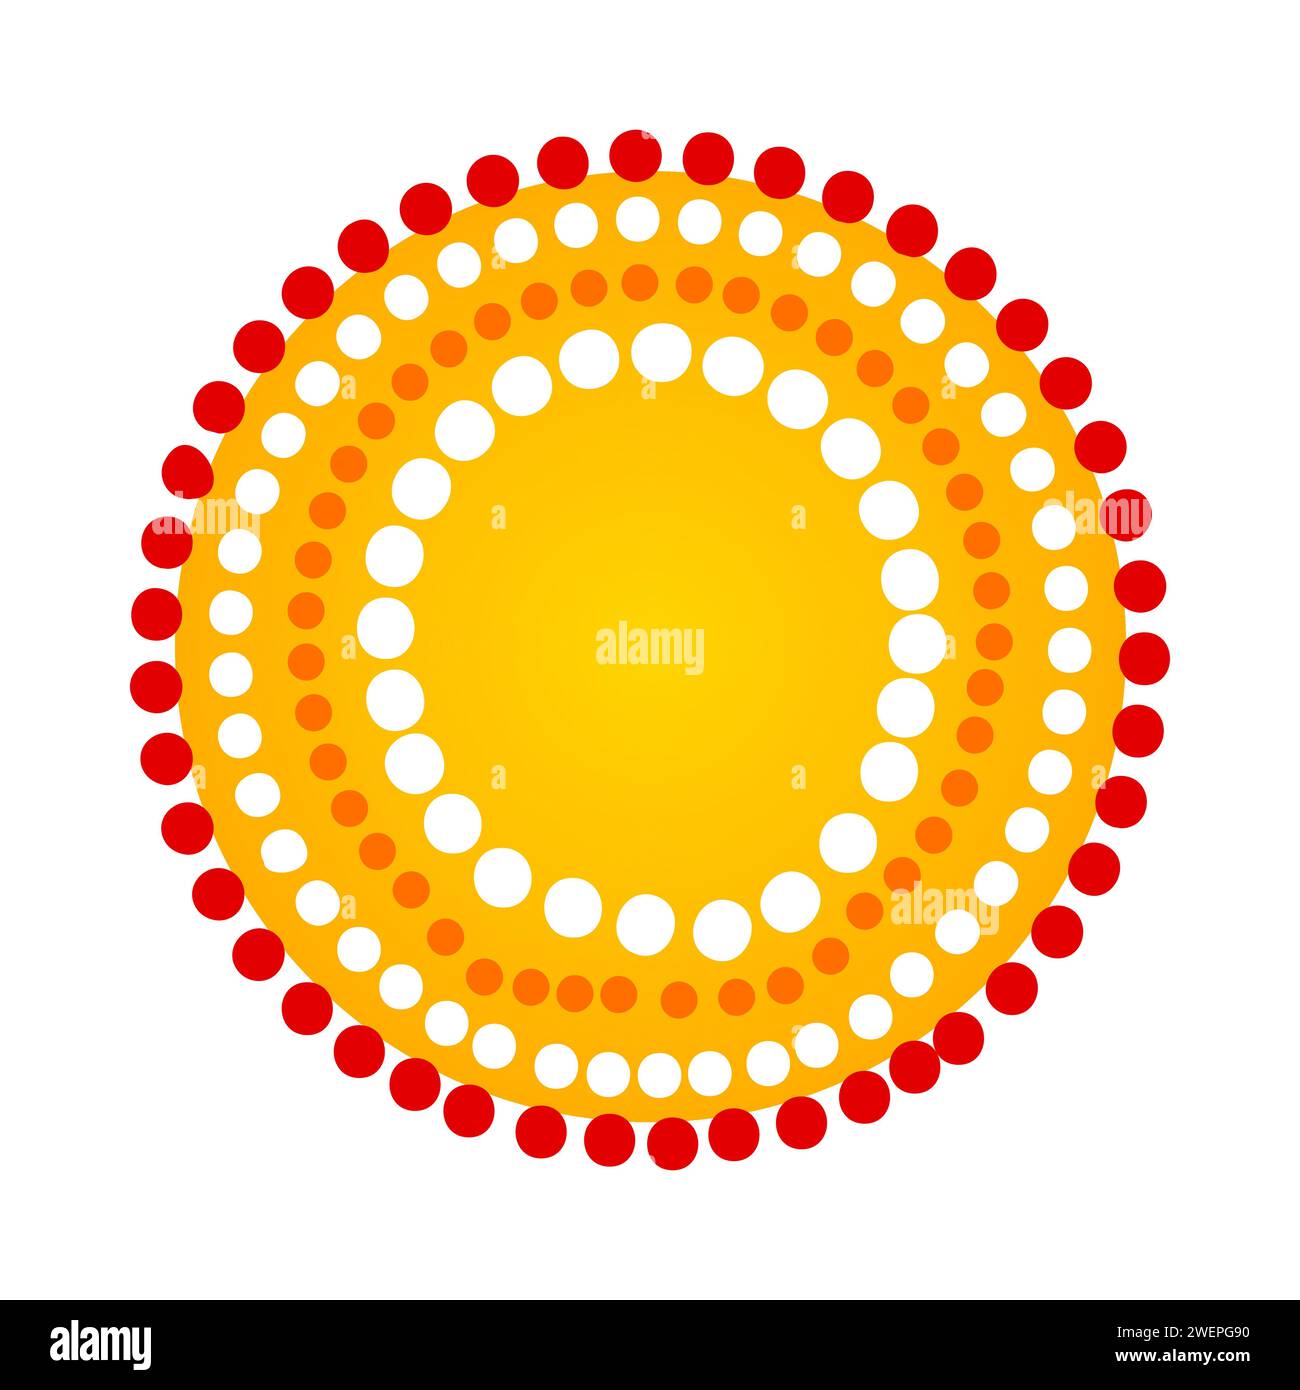 Sonne im dekorativen ethnischen Stil der australischen Aborigines. Die Sonne im traditionellen Stil der Stammeskultur. Gelbe Sonne mit Punkten. Sonnensymbol mit gepunktetem Ornament.Vector Stock Vektor